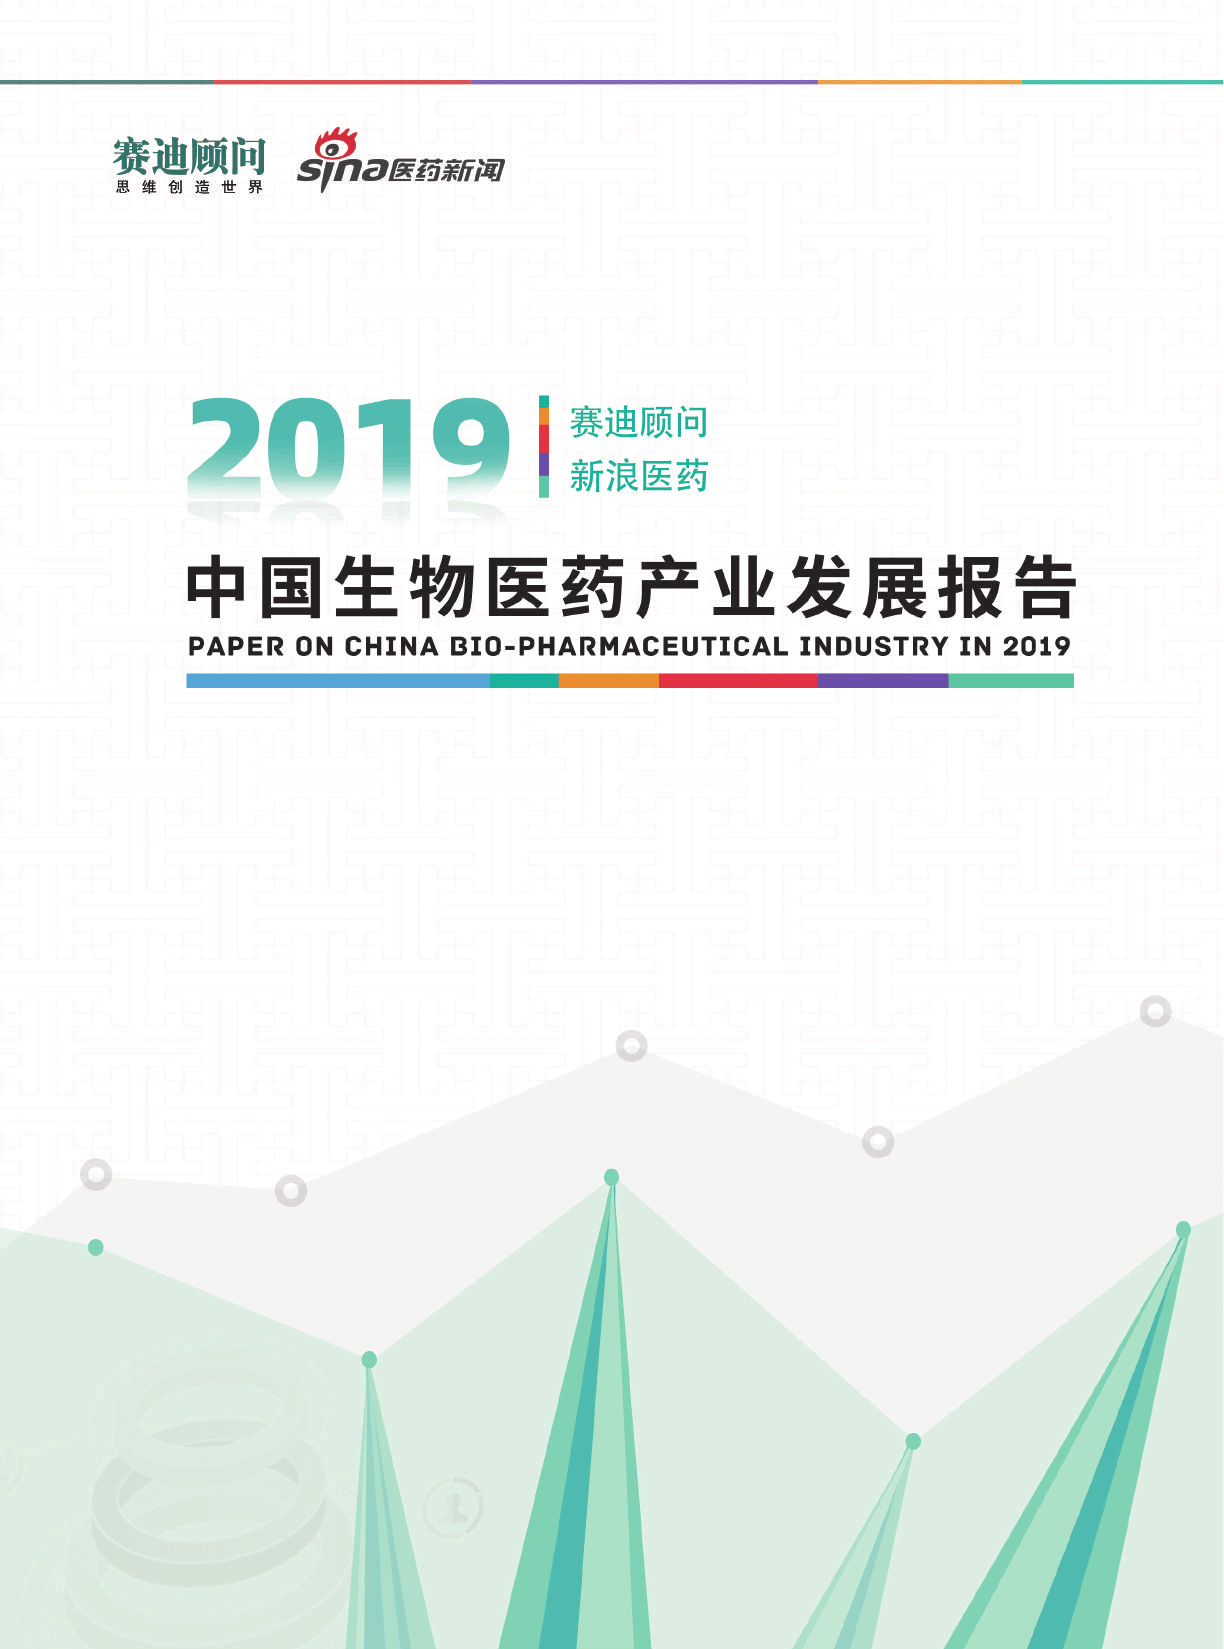 【推广】2019中国生物医药产业发展报告-赛迪